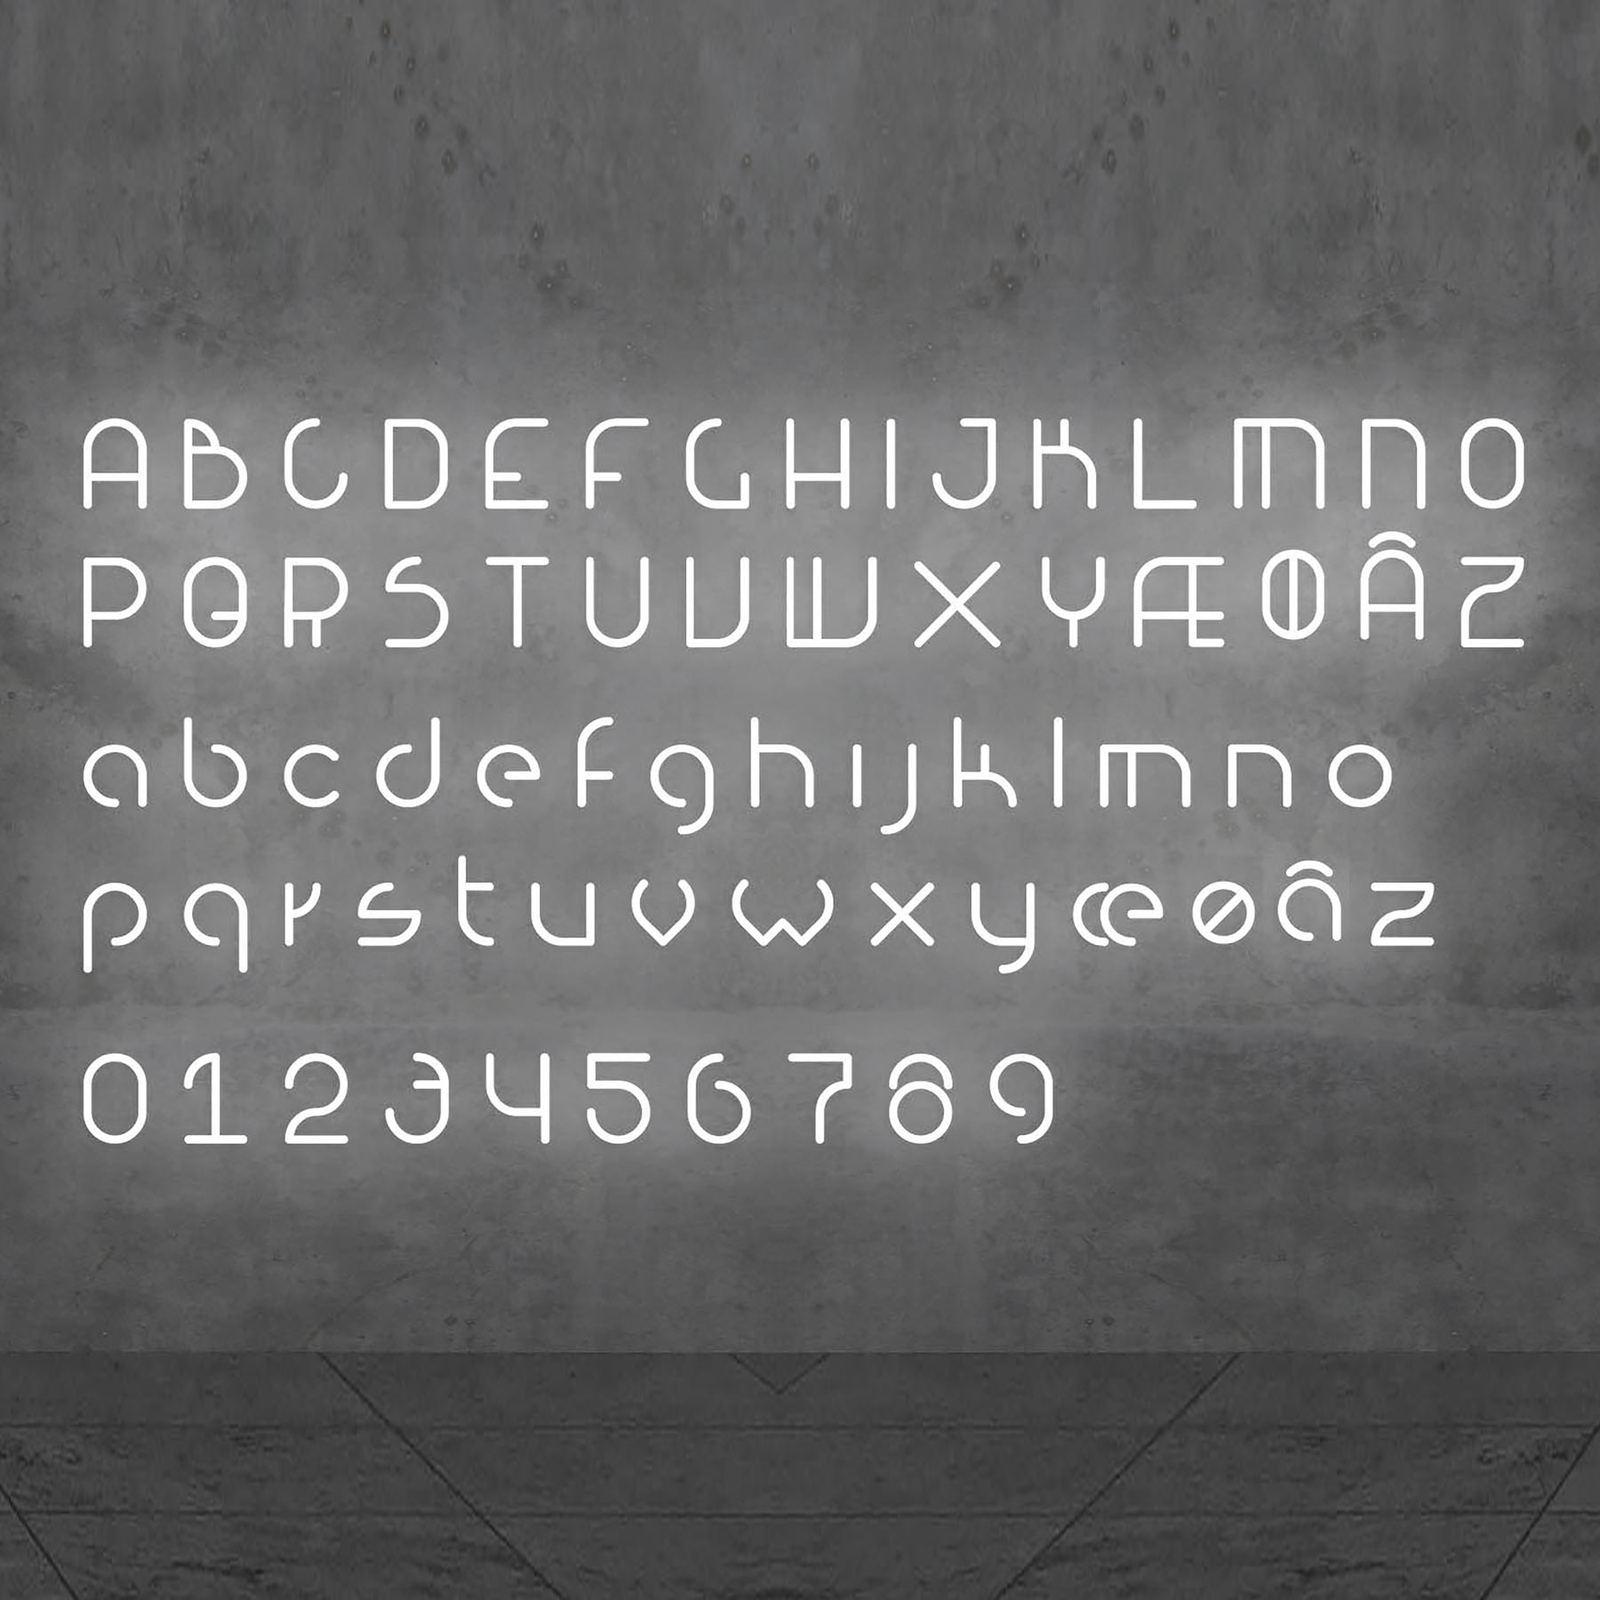 Artemide Alphabet of Light -seinävalo, A-kirjain